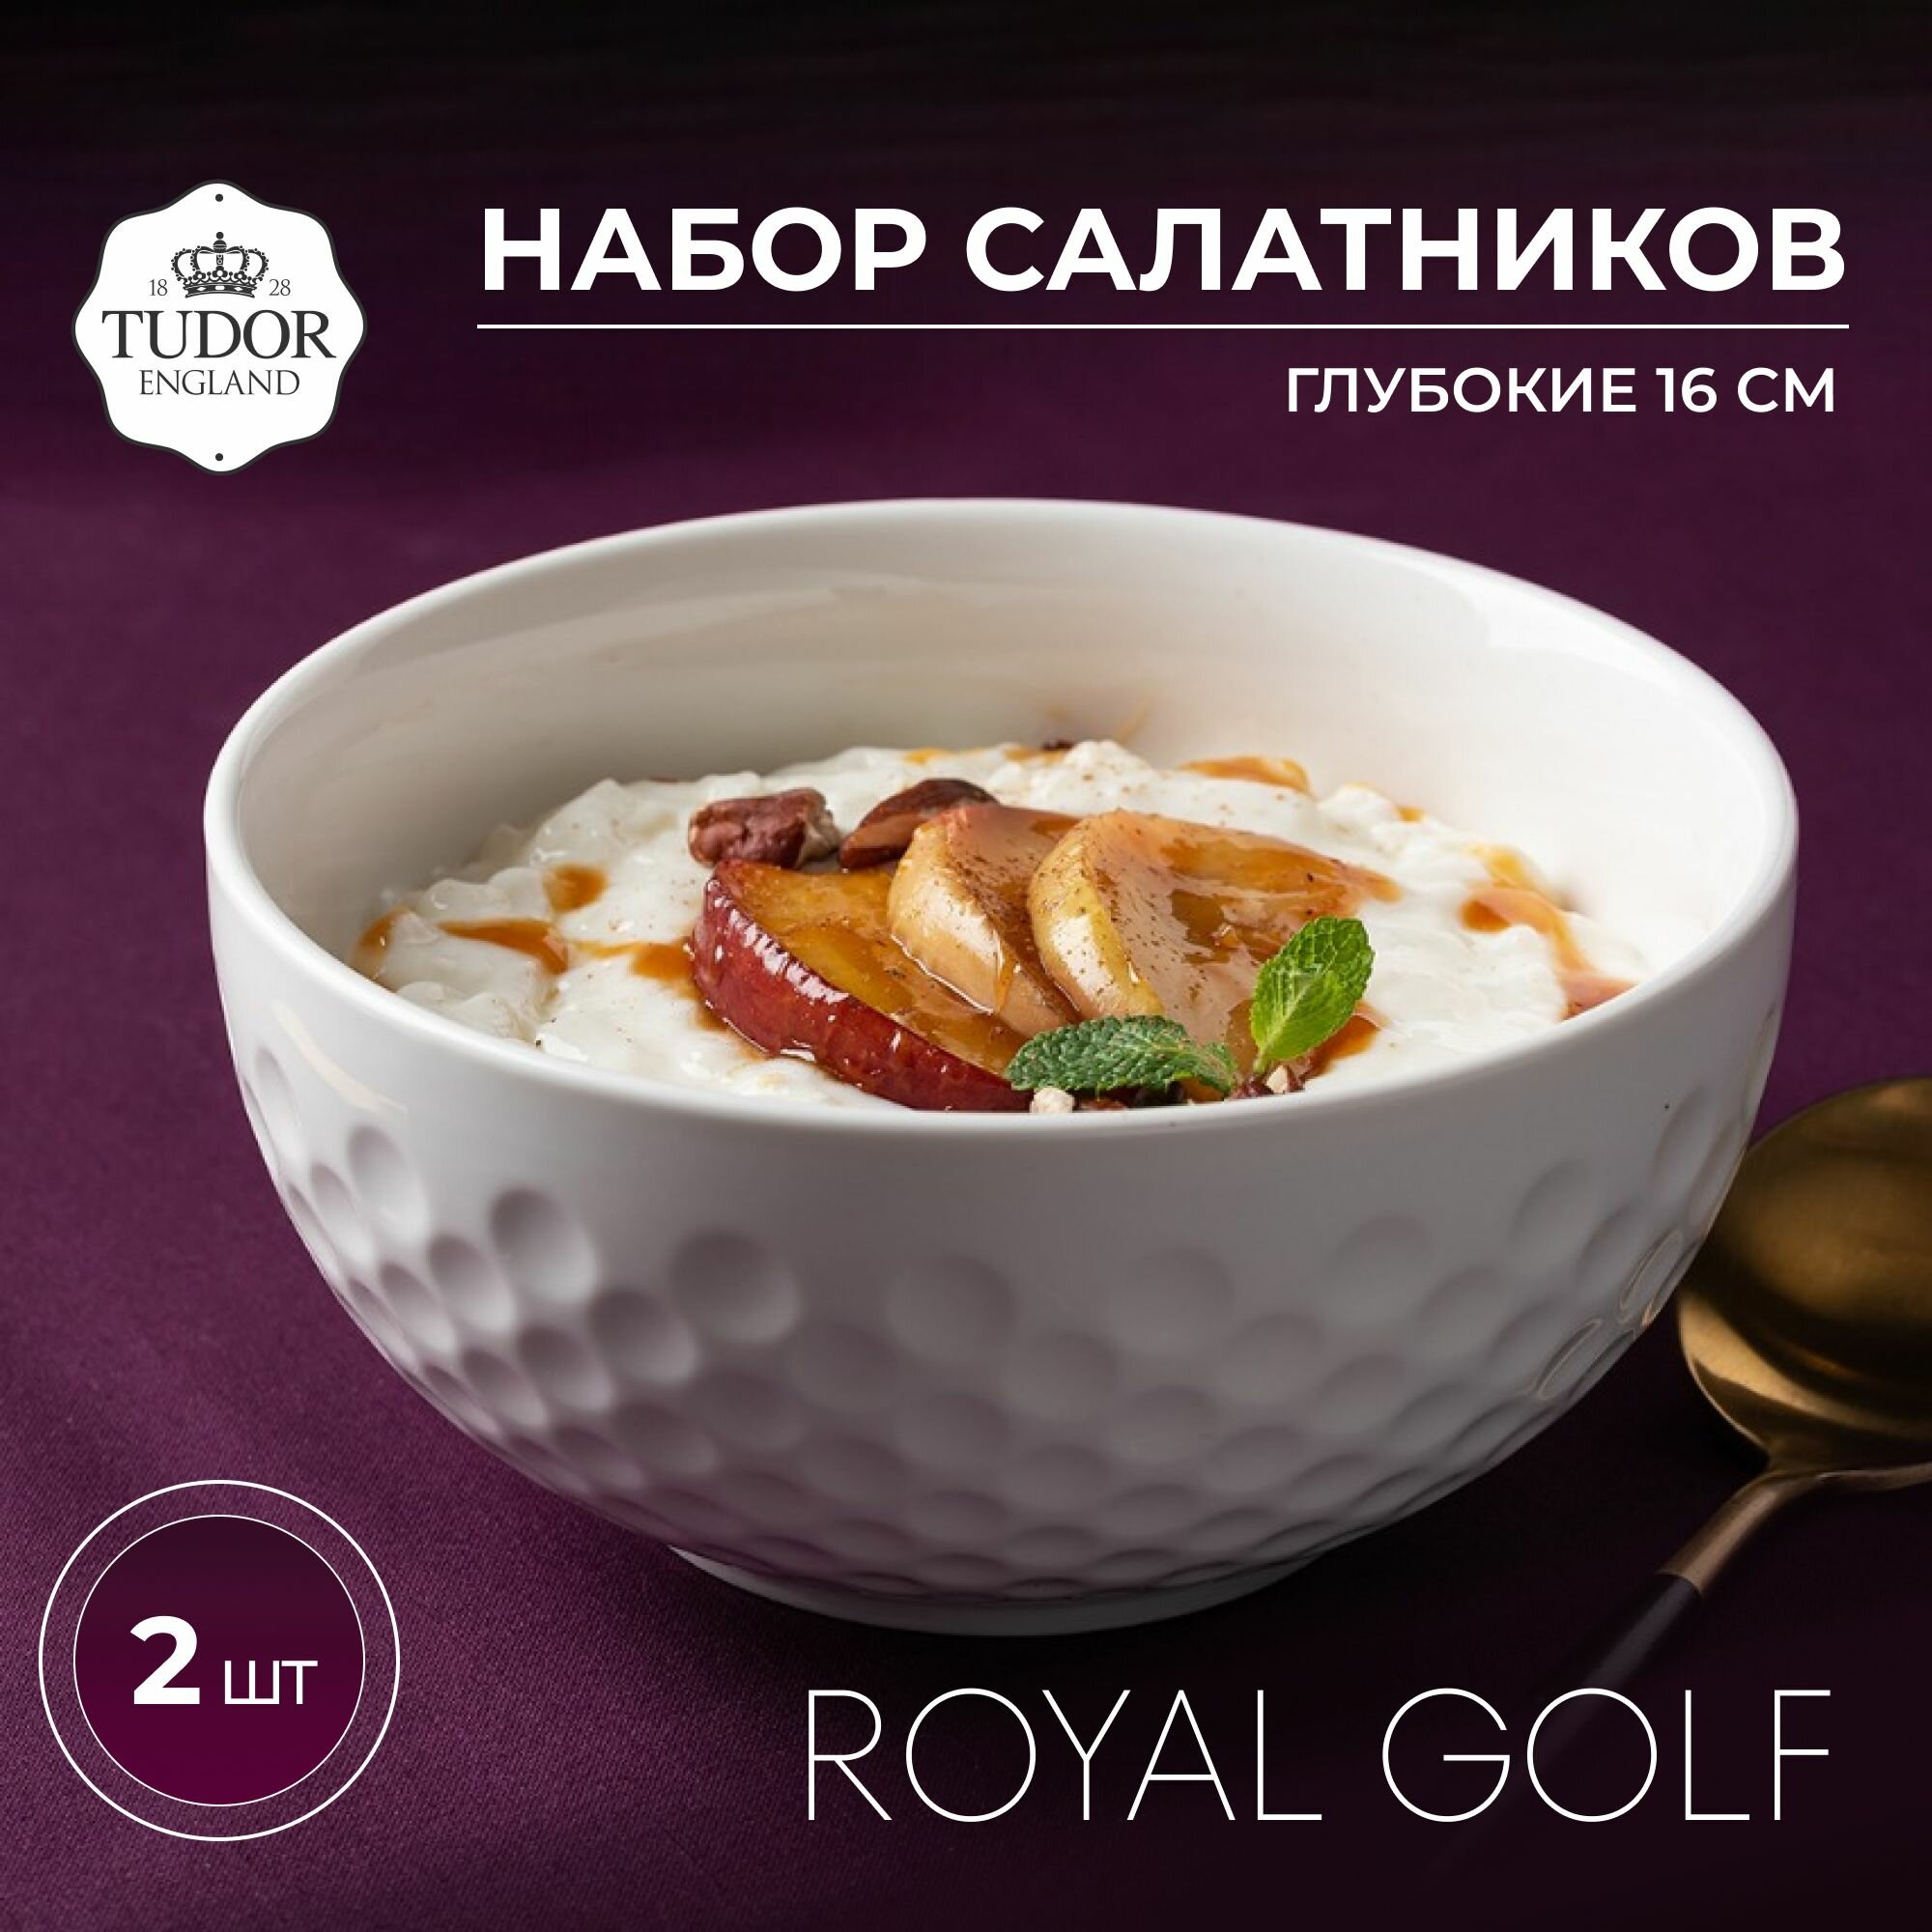 Набор из 2-х салатников 16 см TUDOR ENGLAND Royal Golf